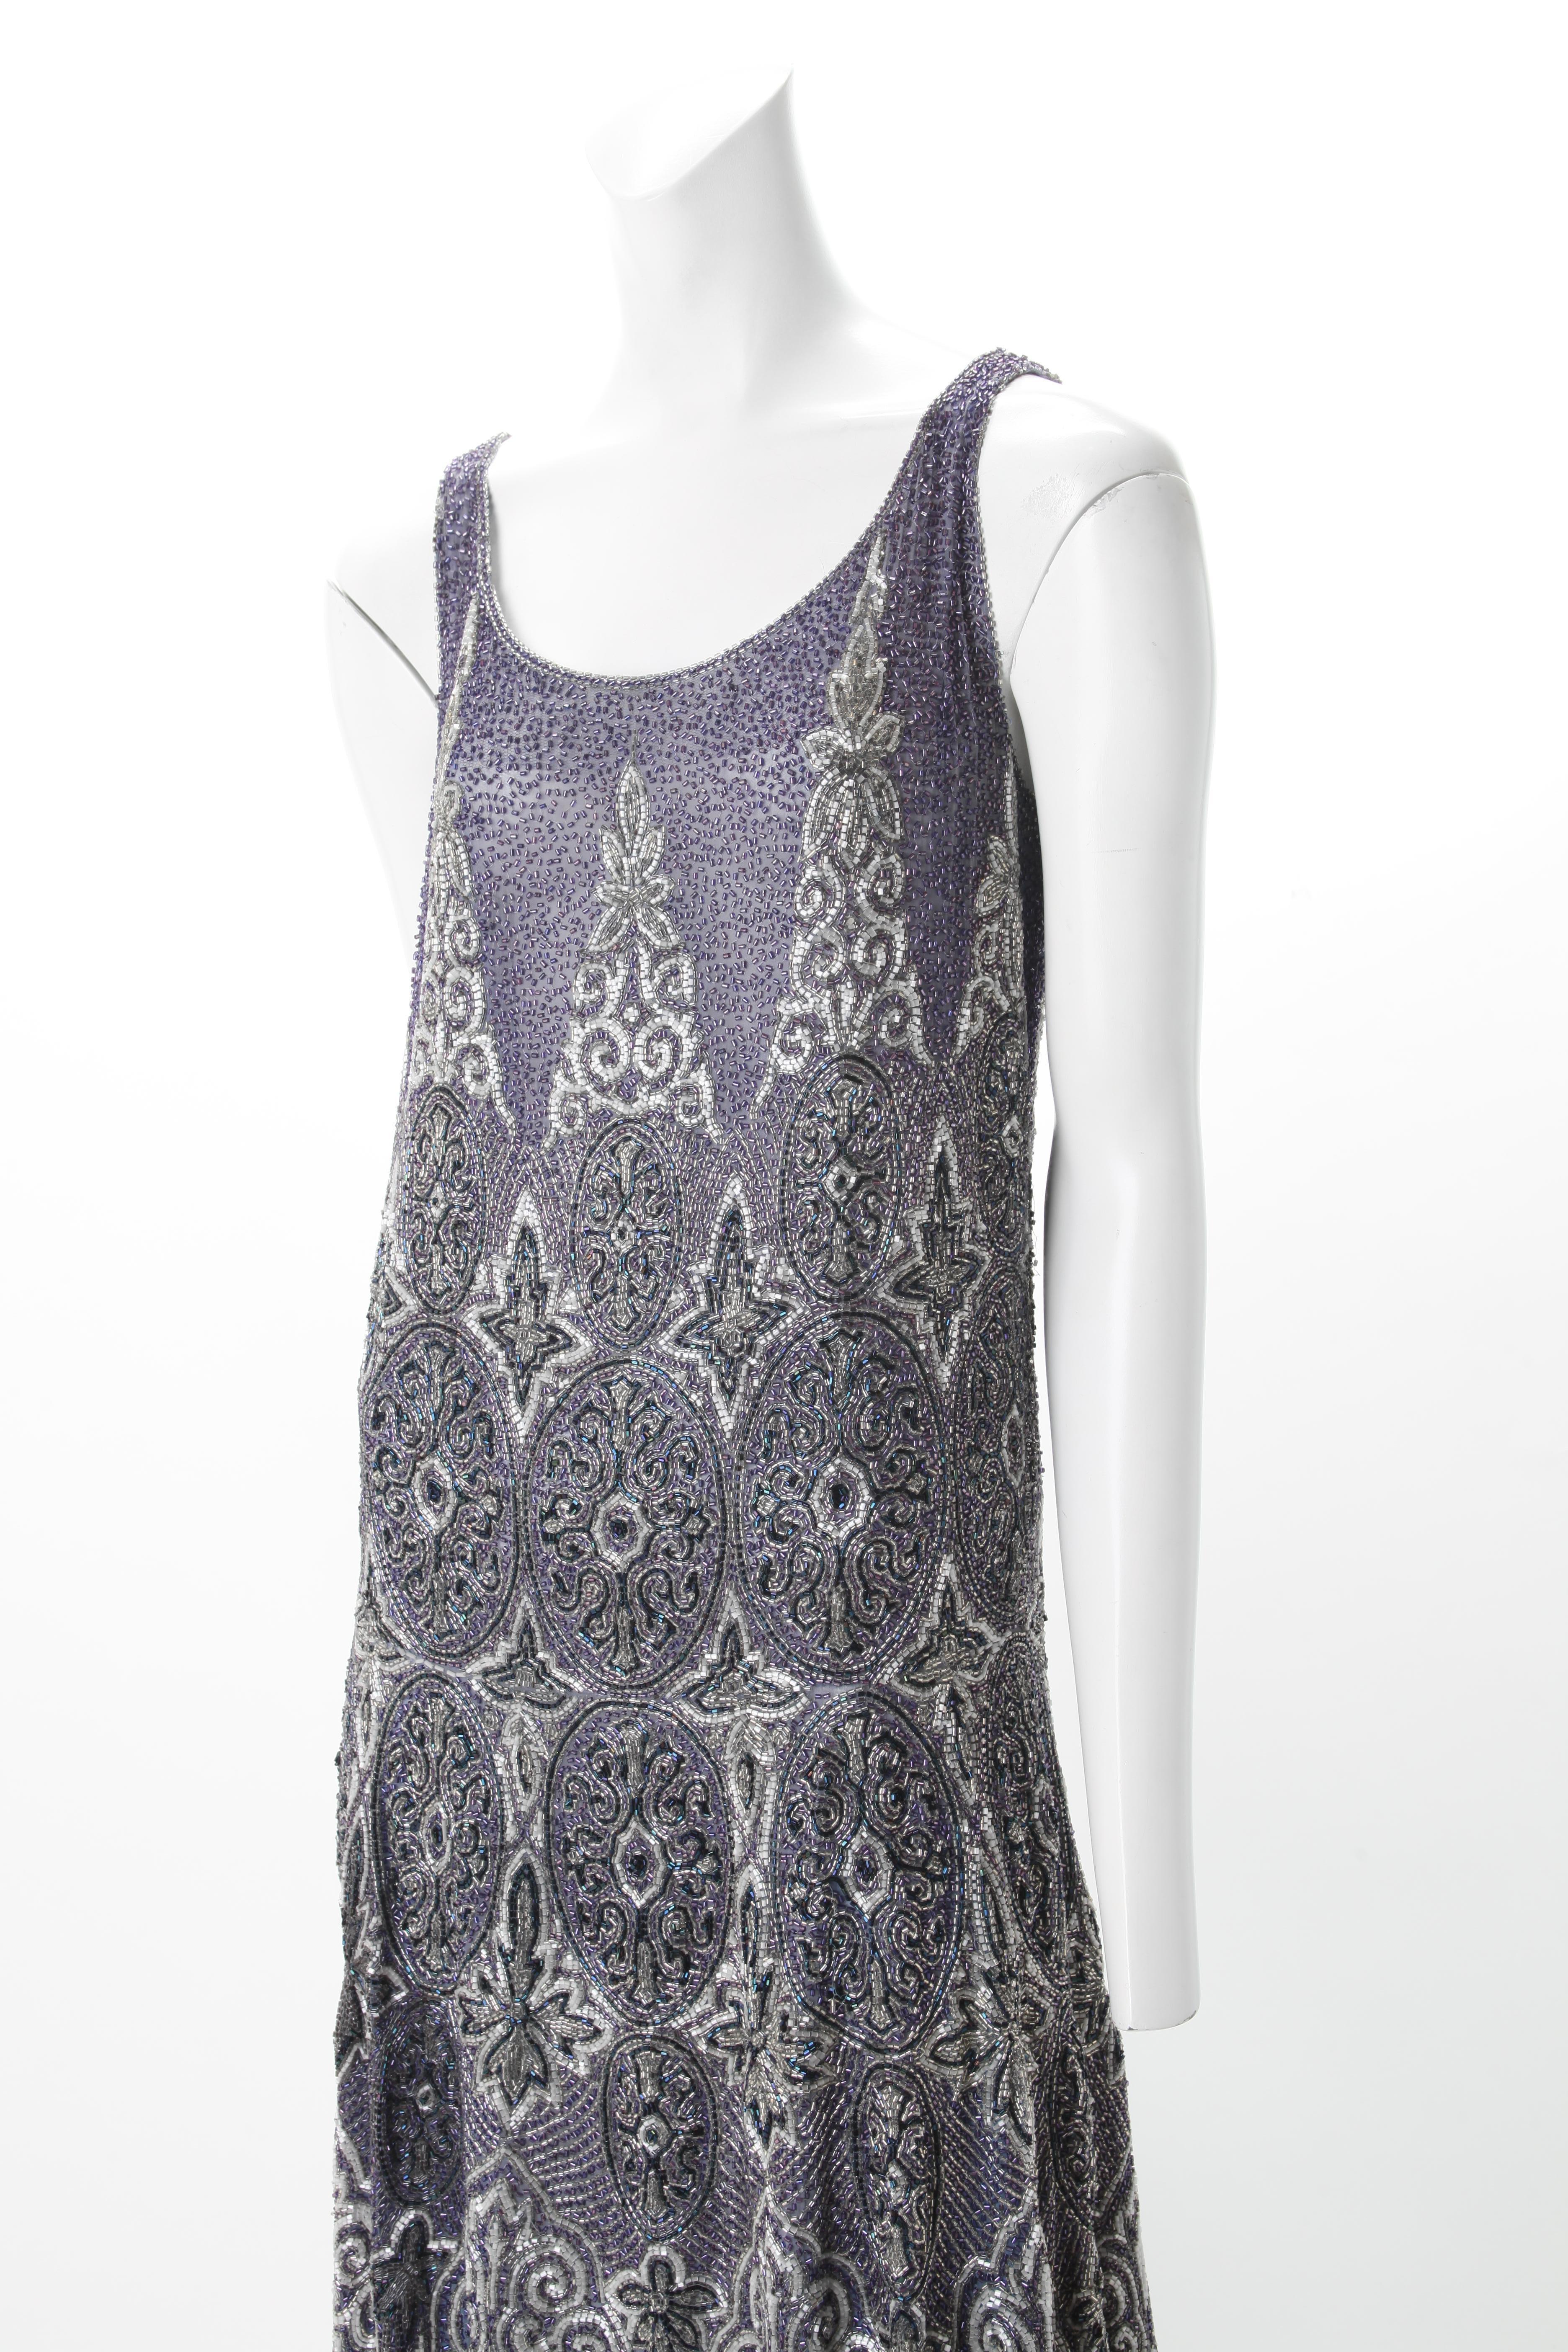 Aufwändig perlenbesetztes französisches FLapper-Kleid, um 1920
Knielanges Flapper-Kleid aus indigofarbener Gaze mit aufwändigen Perlenstickereien mit Motiven im Art-déco-Stil in Indigo-, Blau- und Silberschattierungen. Mit dem traditionellen